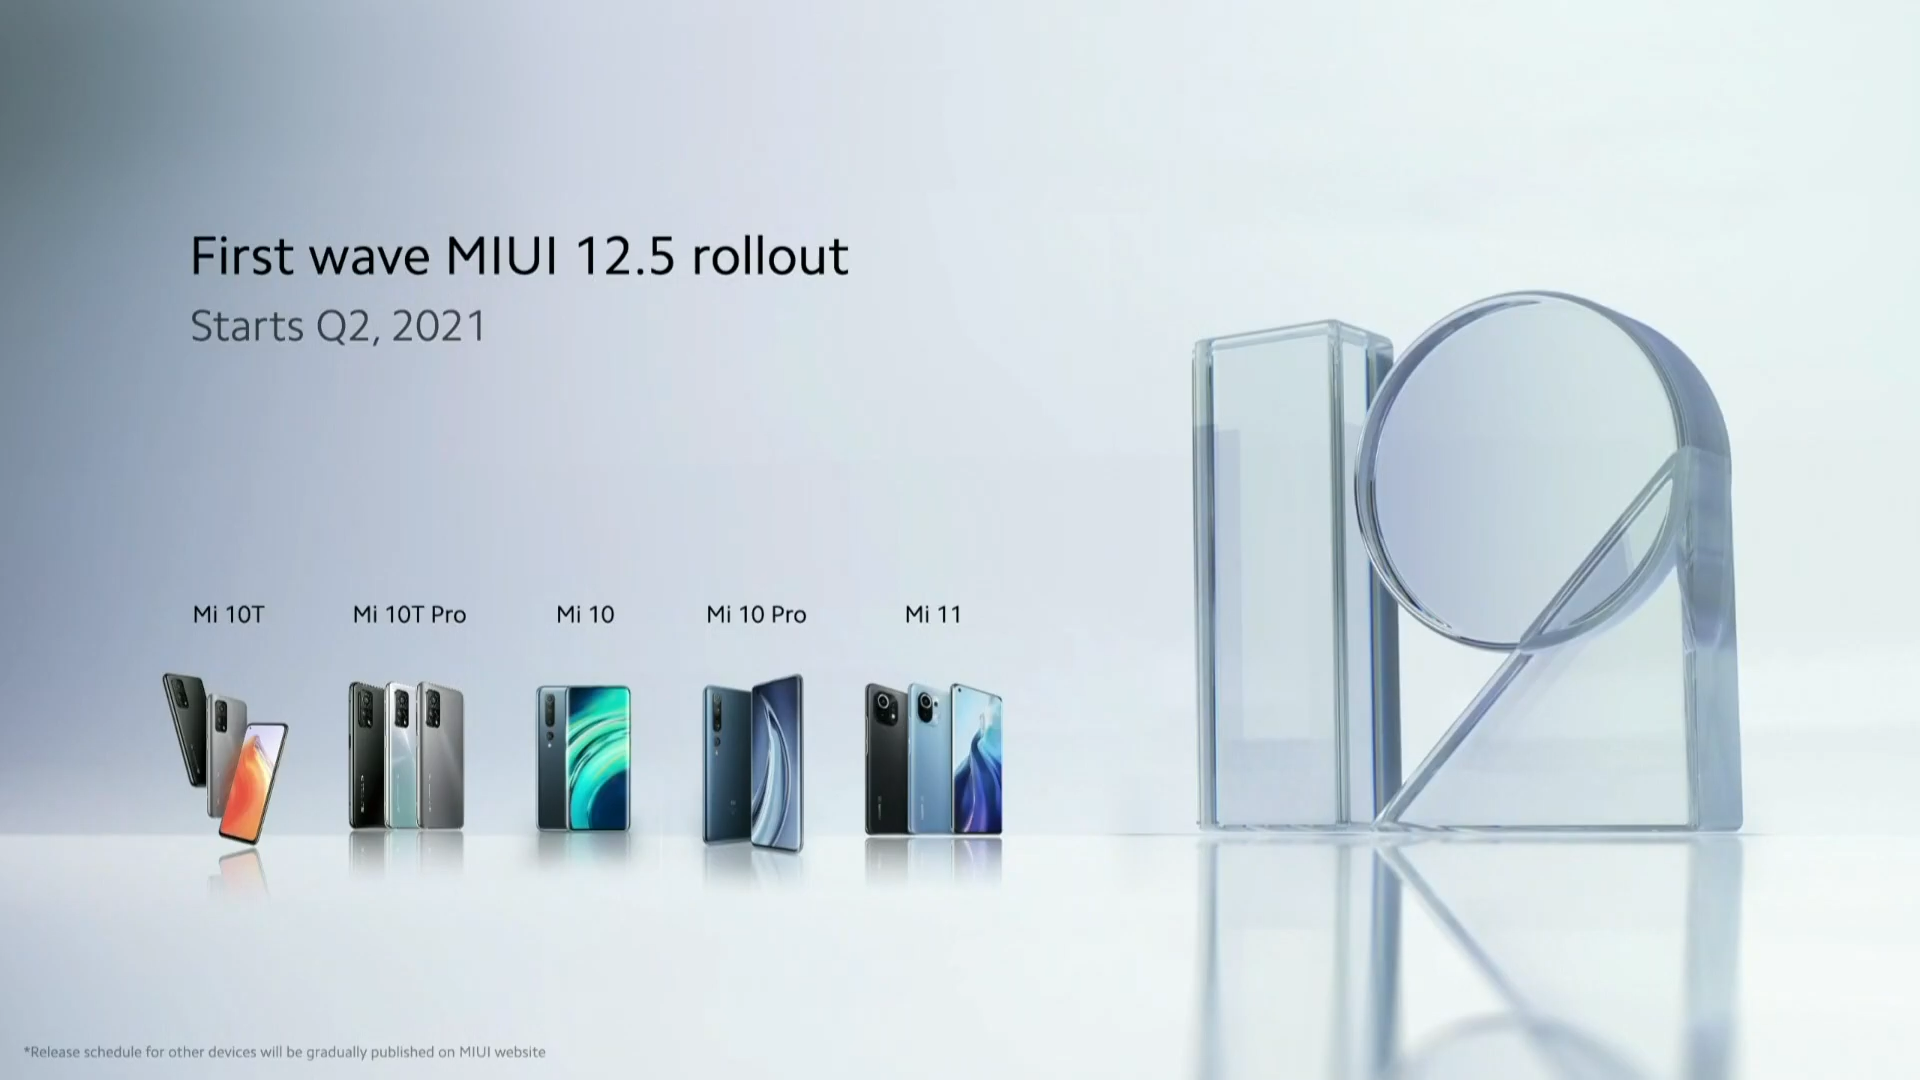 Xiaomi Mi 11